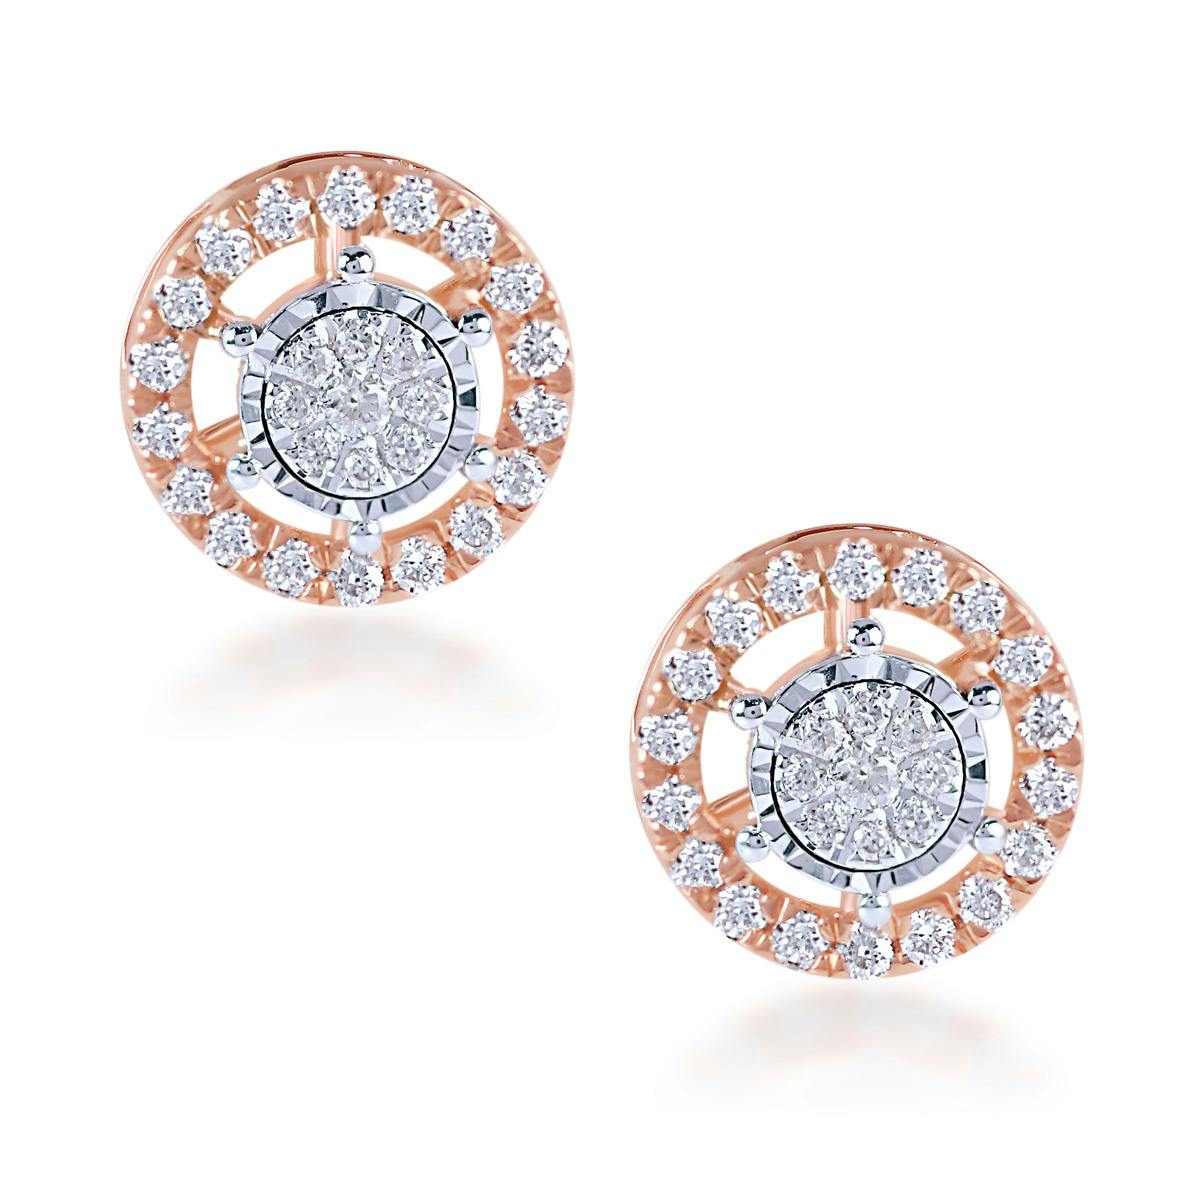 Takeo diamond earrings